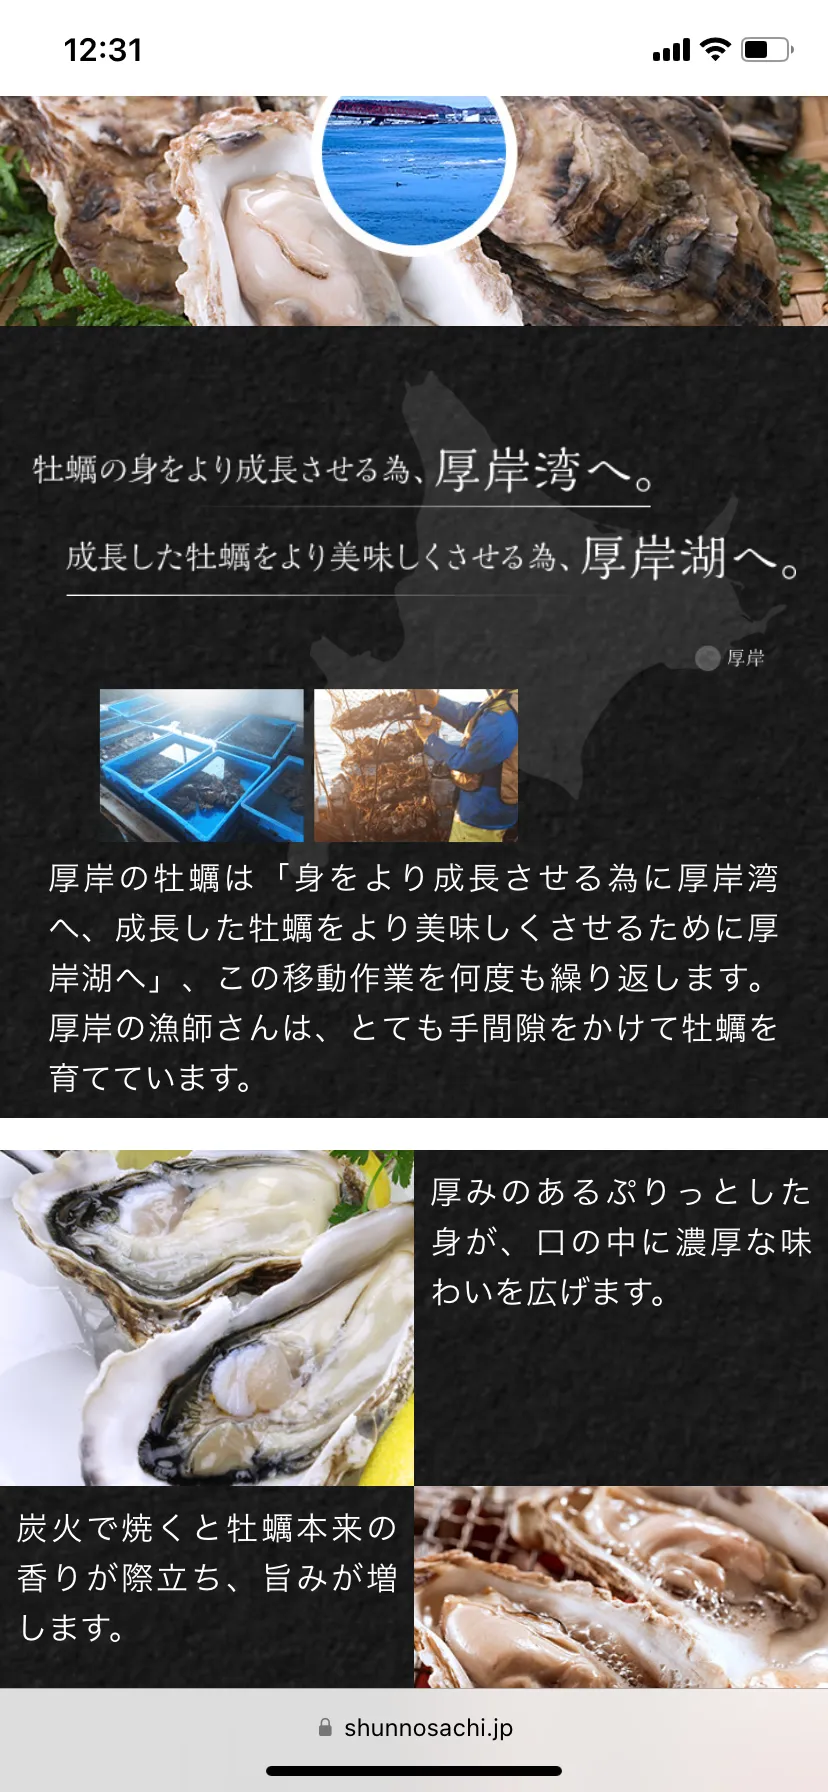 今が旬の北海道産の生牡蠣